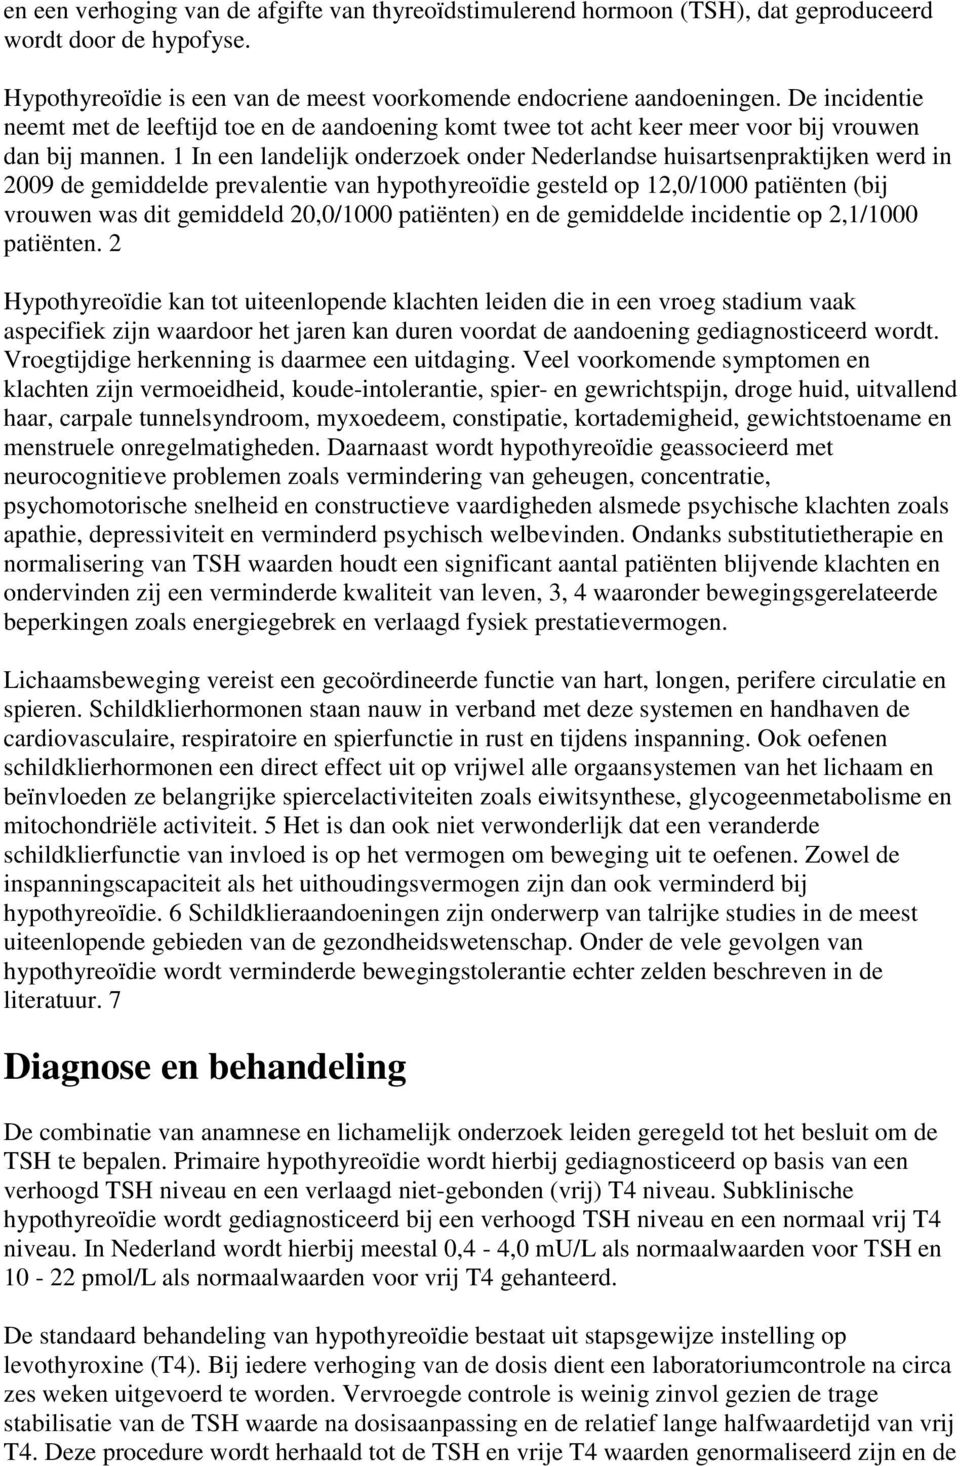 1 In een landelijk onderzoek onder Nederlandse huisartsenpraktijken werd in 2009 de gemiddelde prevalentie van hypothyreoïdie gesteld op 12,0/1000 patiënten (bij vrouwen was dit gemiddeld 20,0/1000